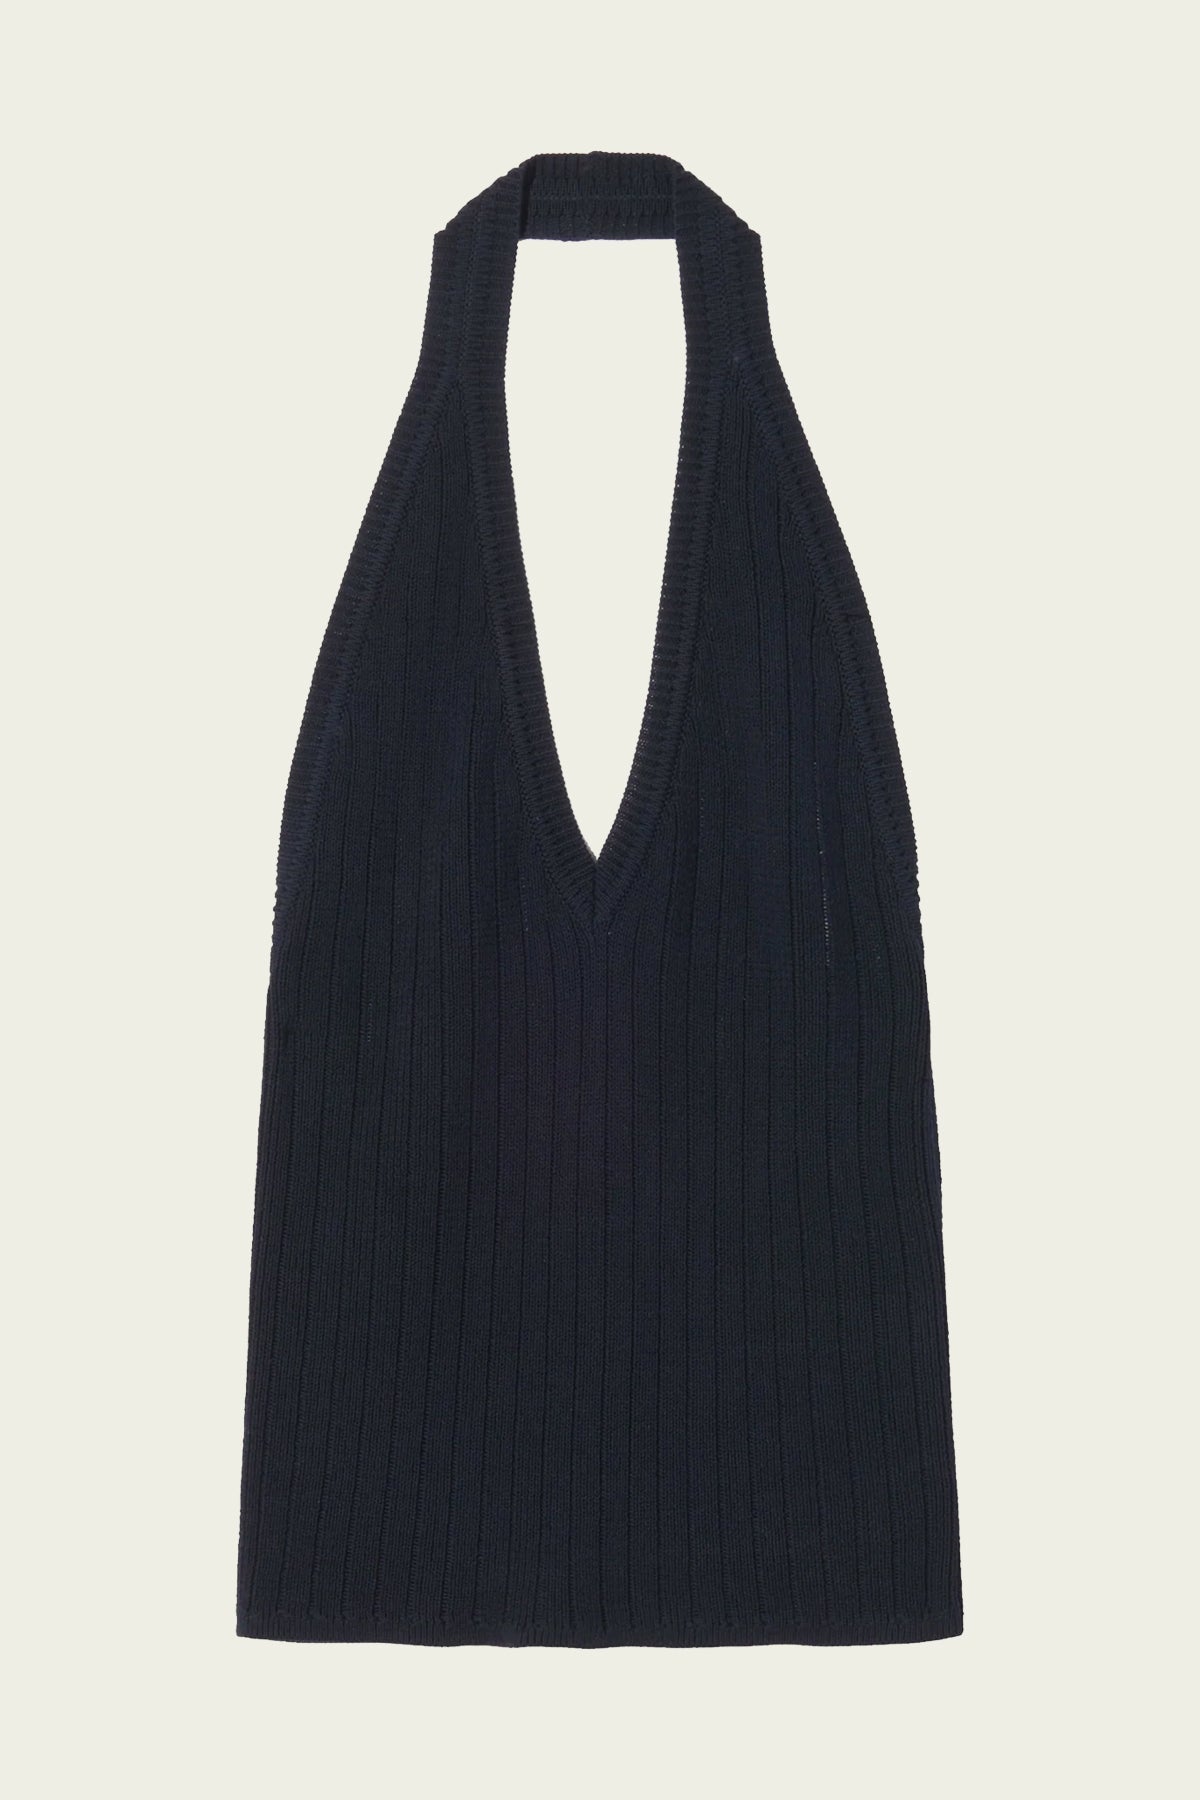 Sedona Knit Halter Top in Dark Navy - shop-olivia.com